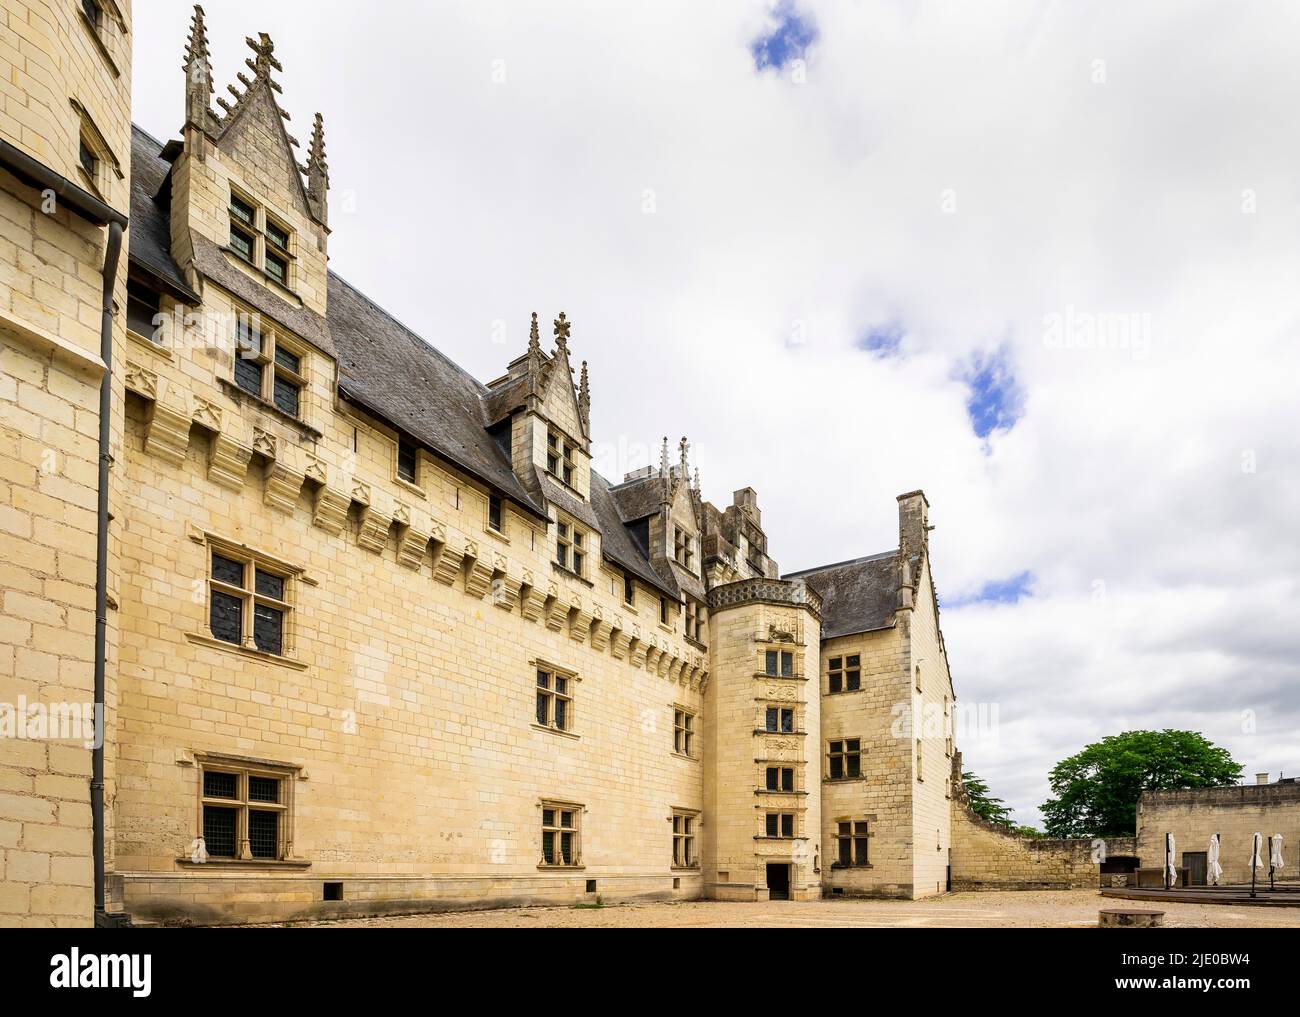 The Château de Montsoreau is a late Gothic style castle  built in the Loire riverbed. It is located in market town of Montsoreau. Maine-et-Loire dépar Stock Photo